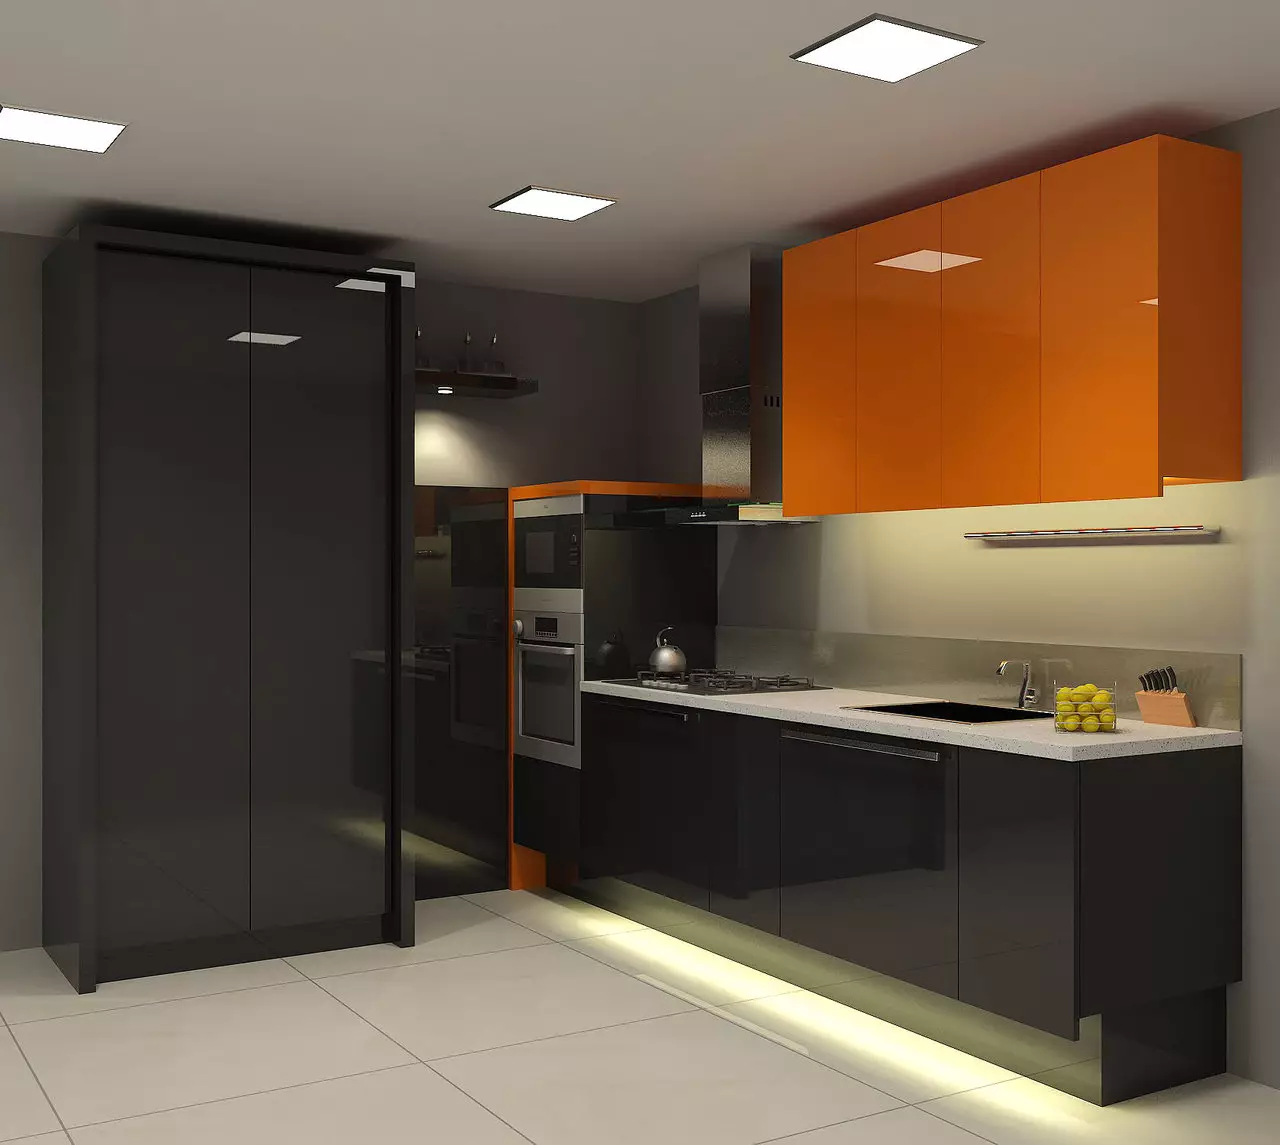 آشپزخانه سیاه (100 عکس): آشپزخانه مخملی سیاه و سفید با چوب در طراحی داخلی، مات و آشپزخانه براق در رنگ های خاکستری سیاه و سفید، طراحی دیوار سیاه 21175_42